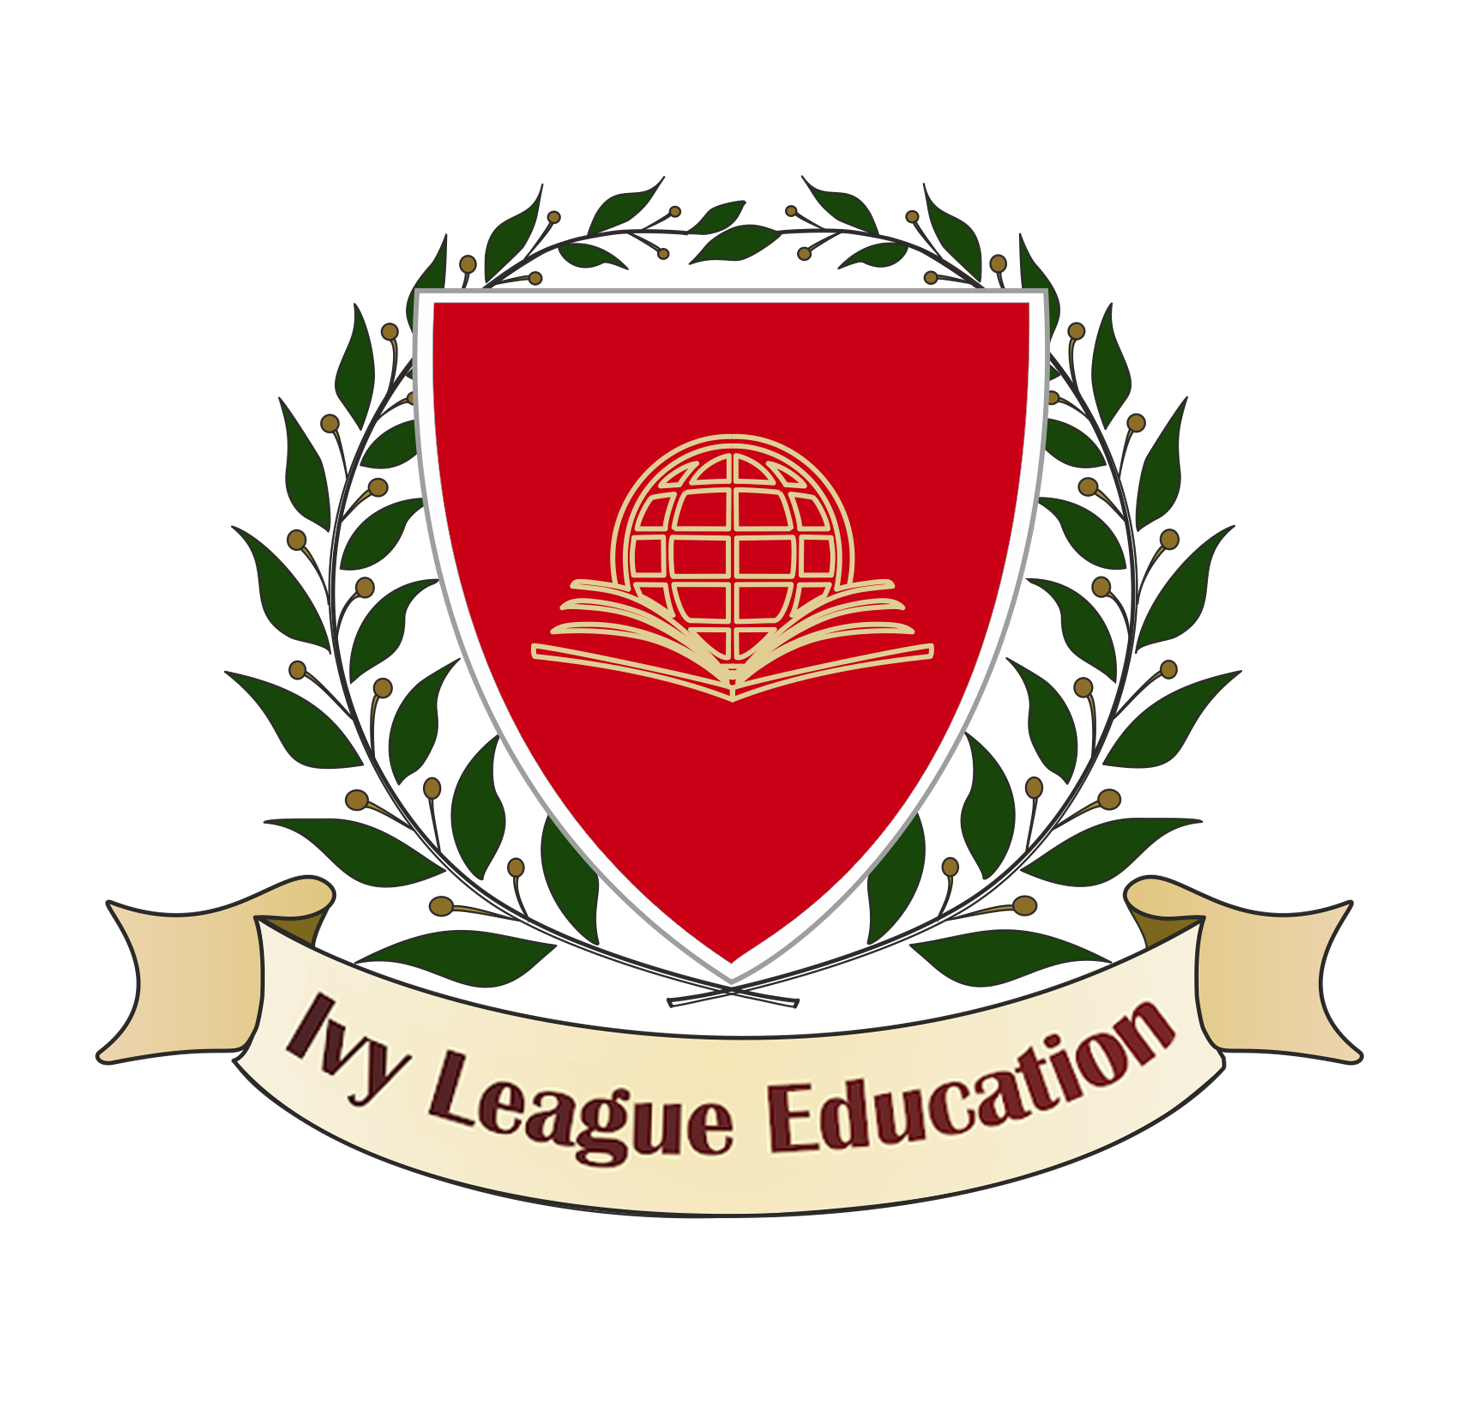 Ivy League Education